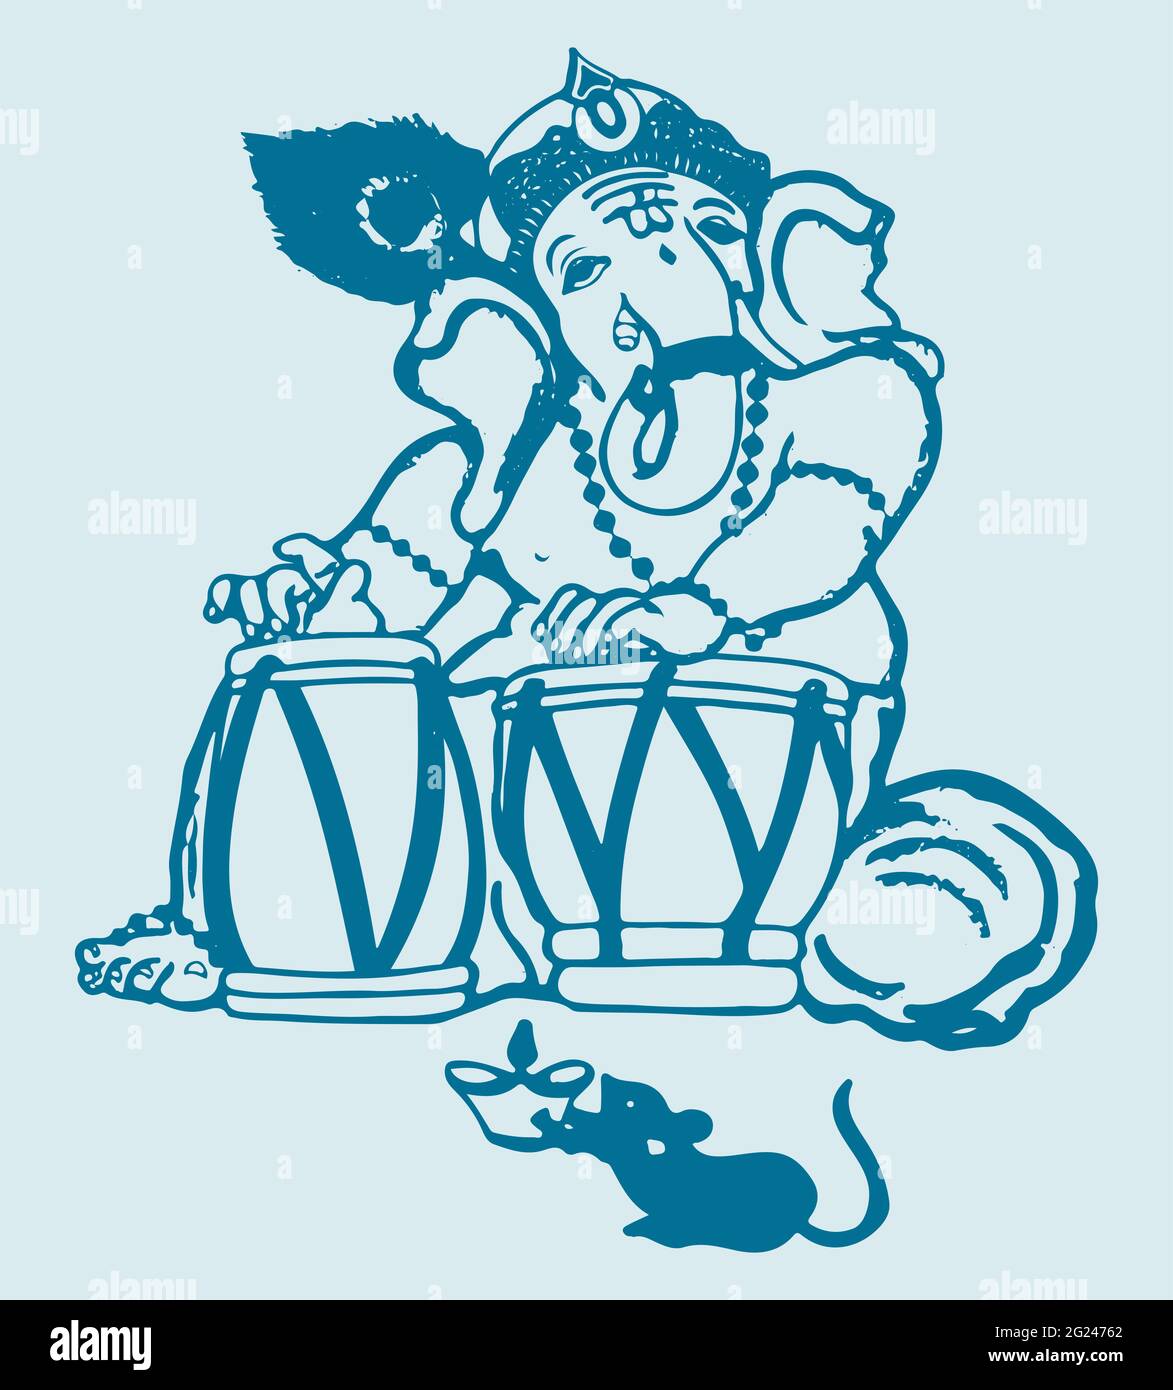 Dessin ou croquis de Lord Ganesha jouant des tambours de tabla isolés sur fond clair Banque D'Images